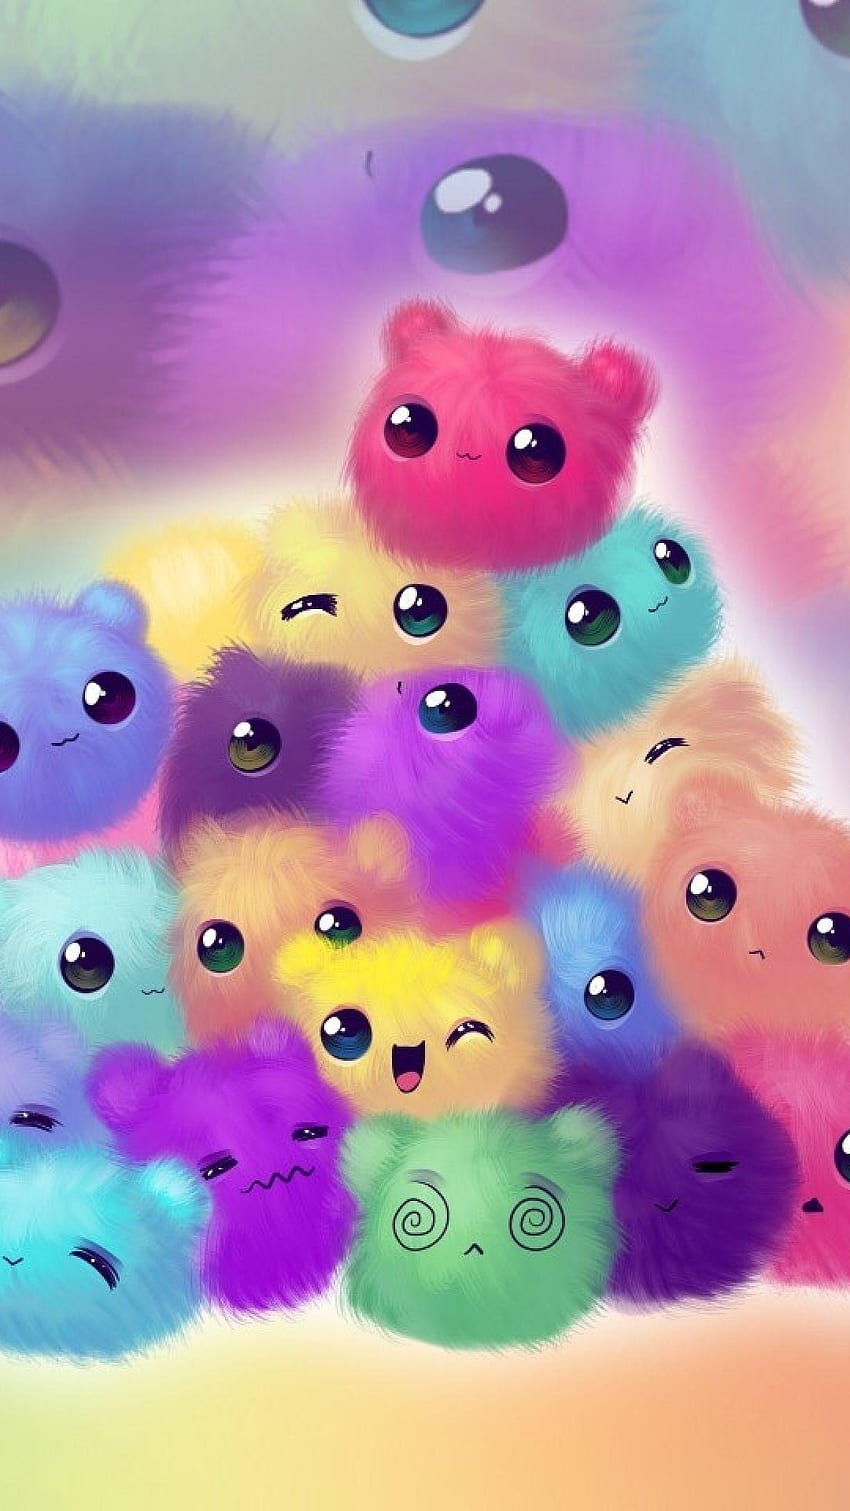 Cute, Colorful, Cartoon HD phone wallpaper | Pxfuel